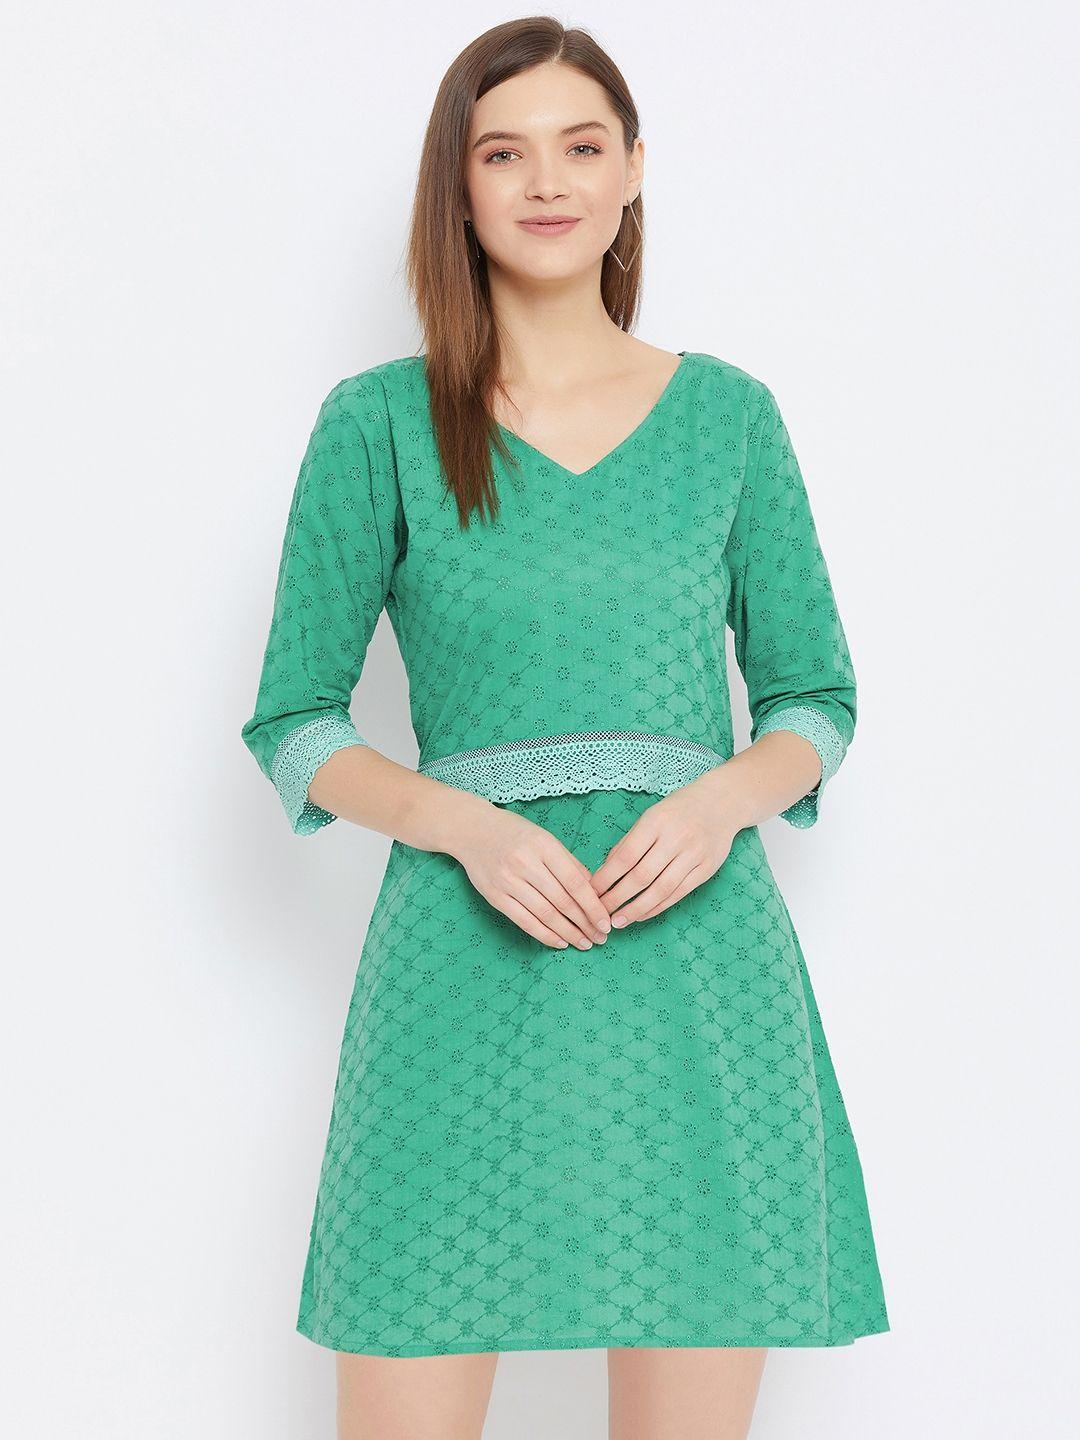 bitterlime green schiffli embroidered dress